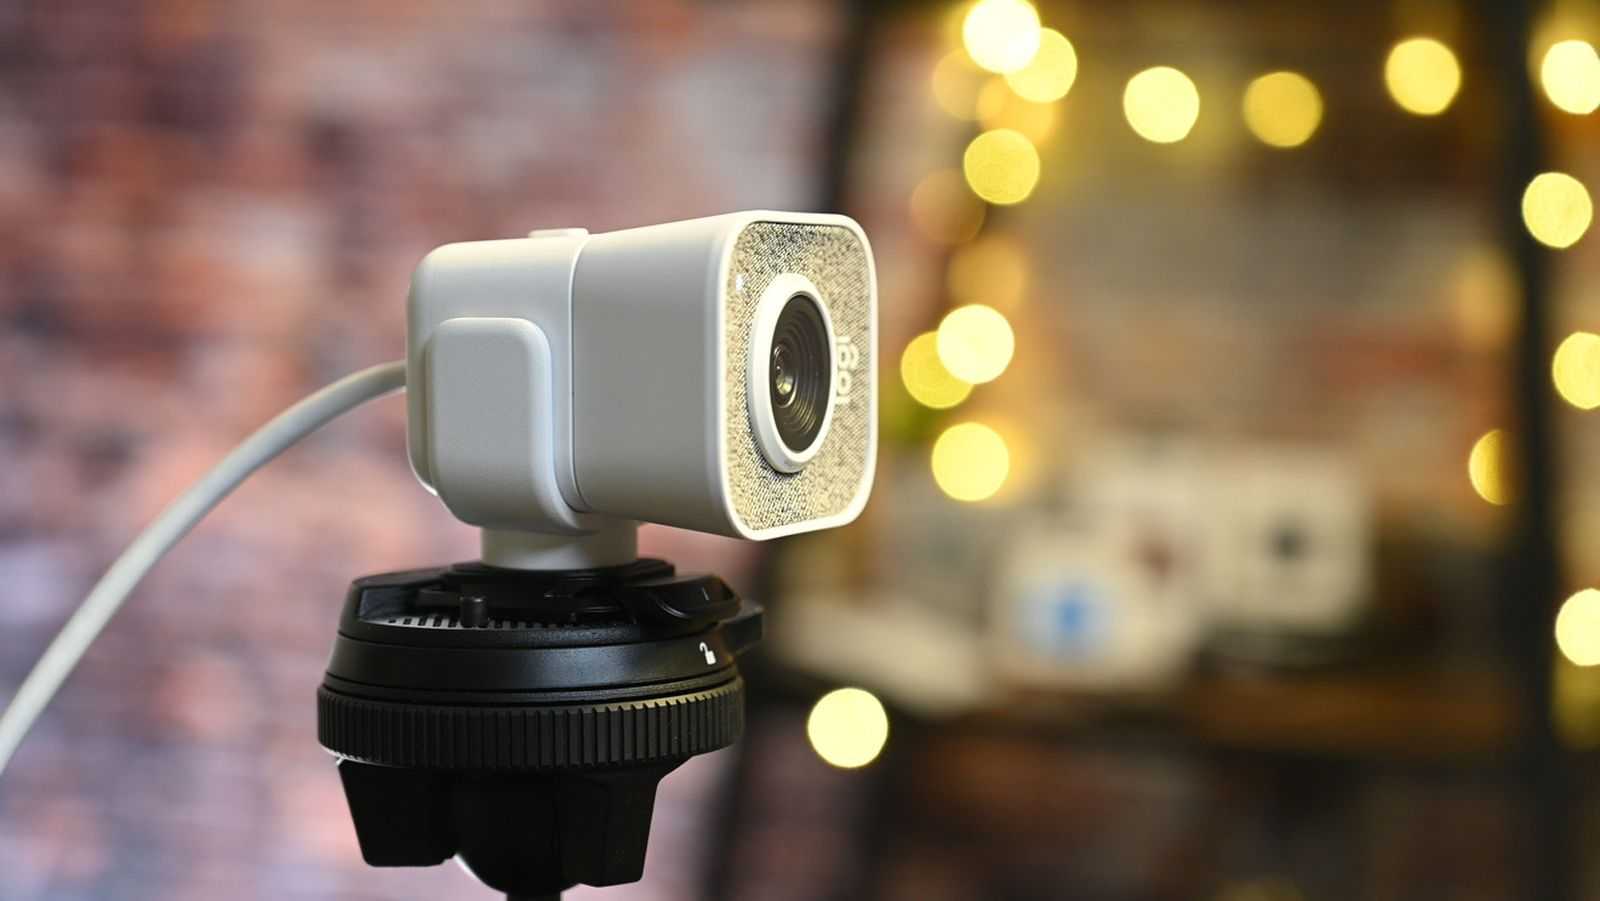 Топ-20+ лучших камер для ютуба: недорогих, средних и хороших